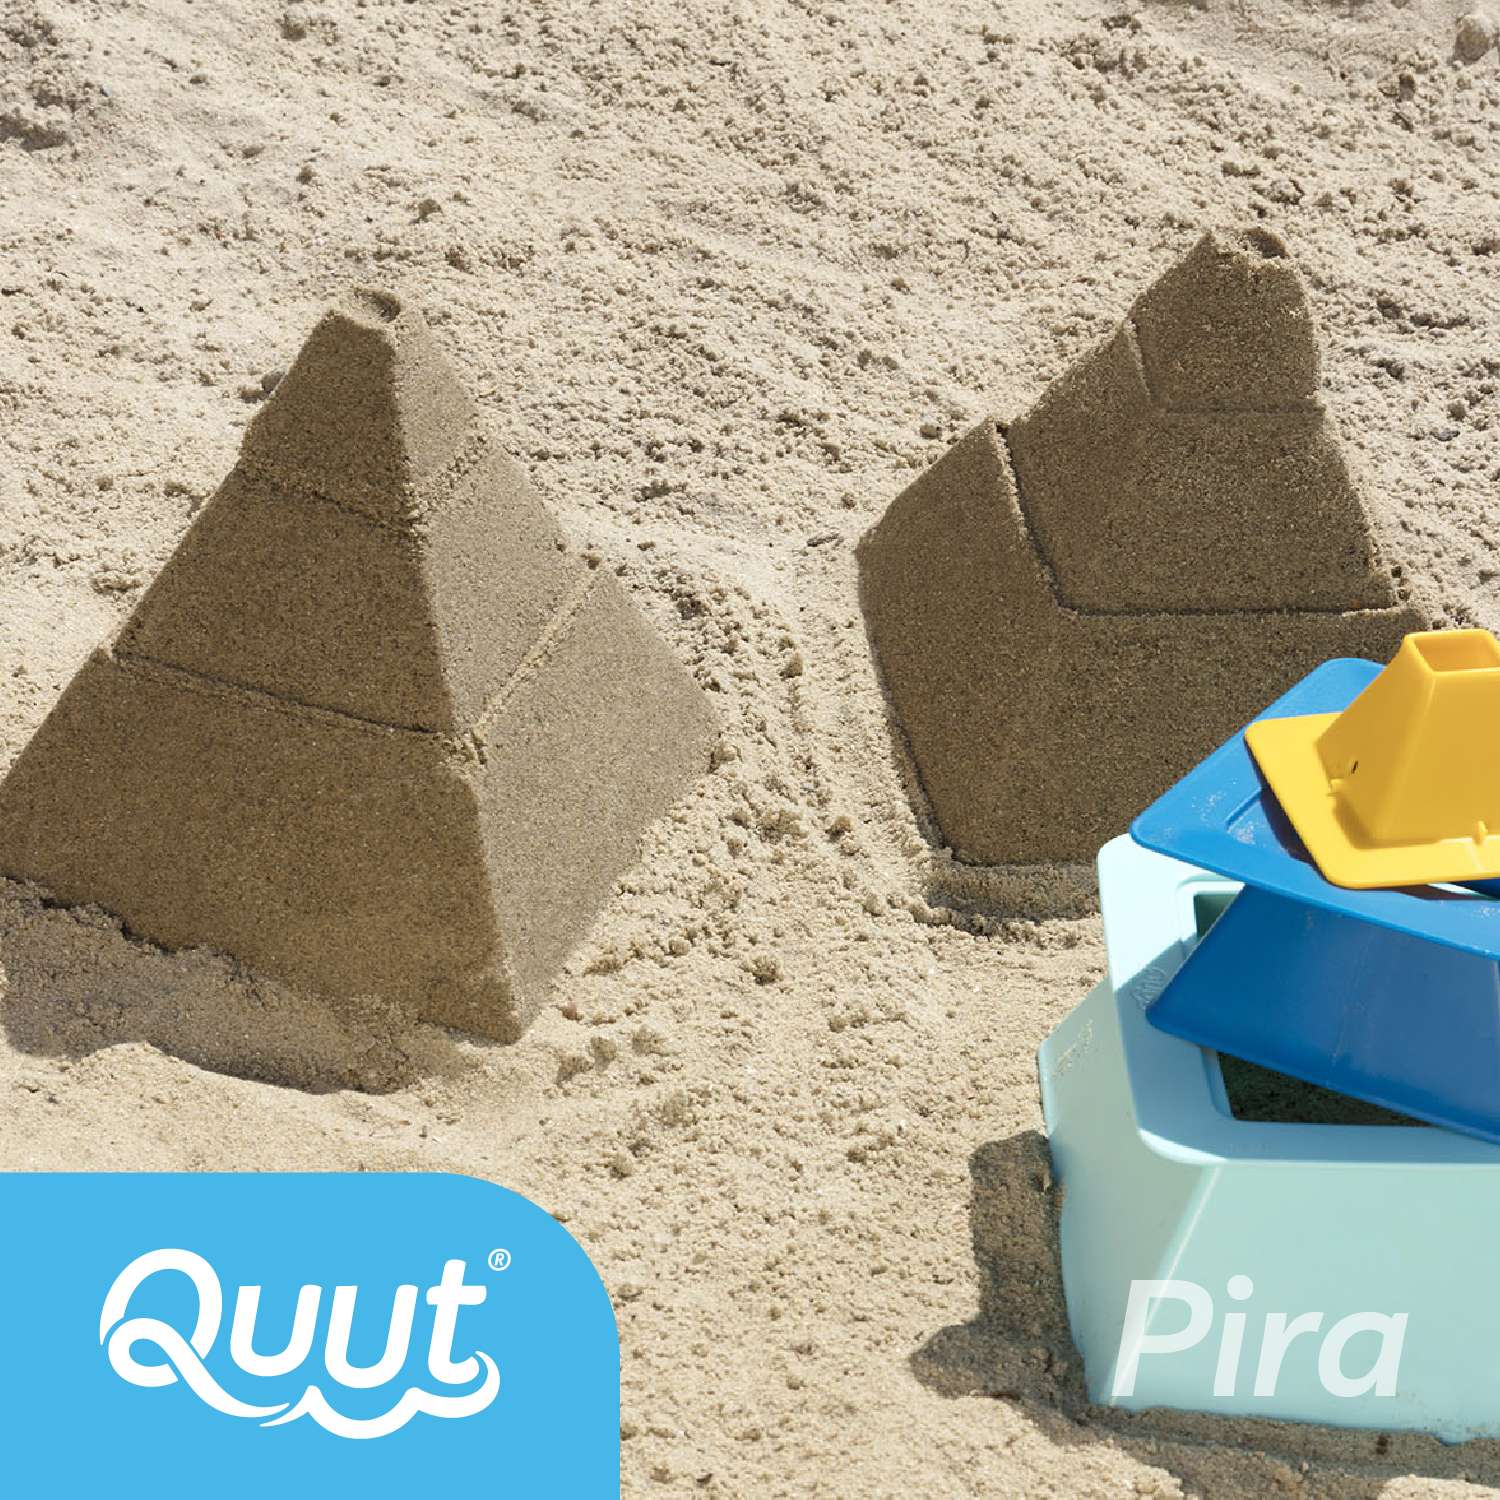 Формочки QUUT для 3-уровневых пирамид из песка и снега Quut Pira - фото 7